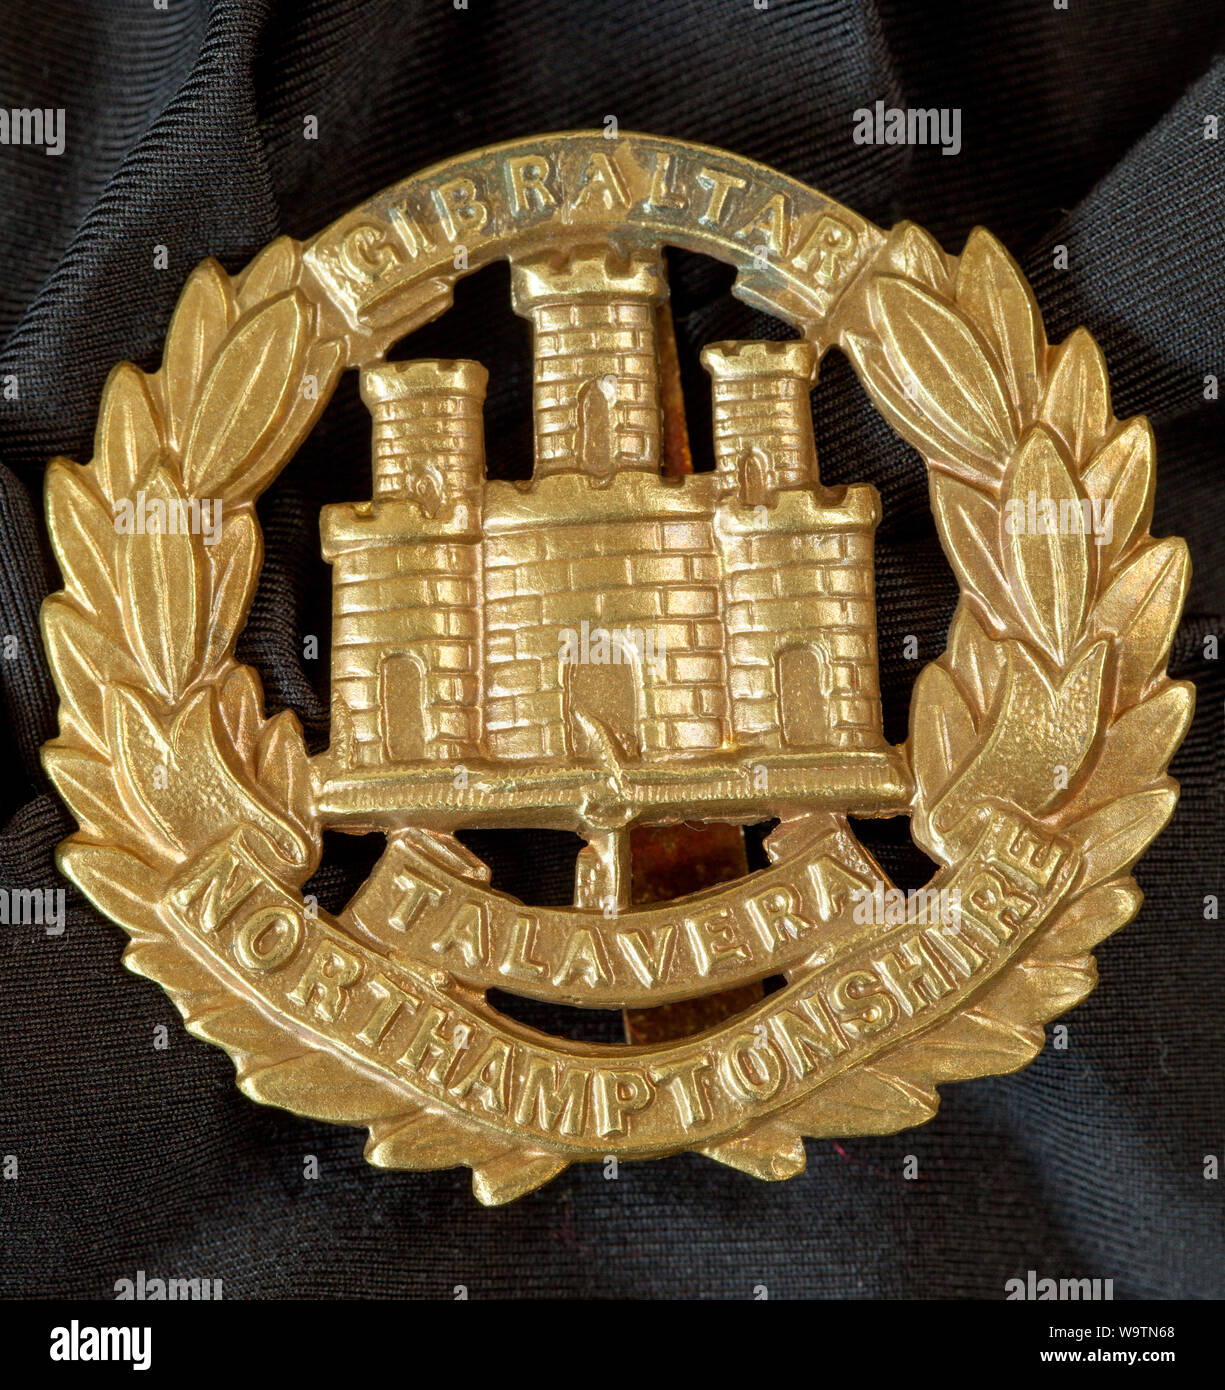 Insigne Militaire Armée britannique - Northamptonshire Regiment Banque D'Images